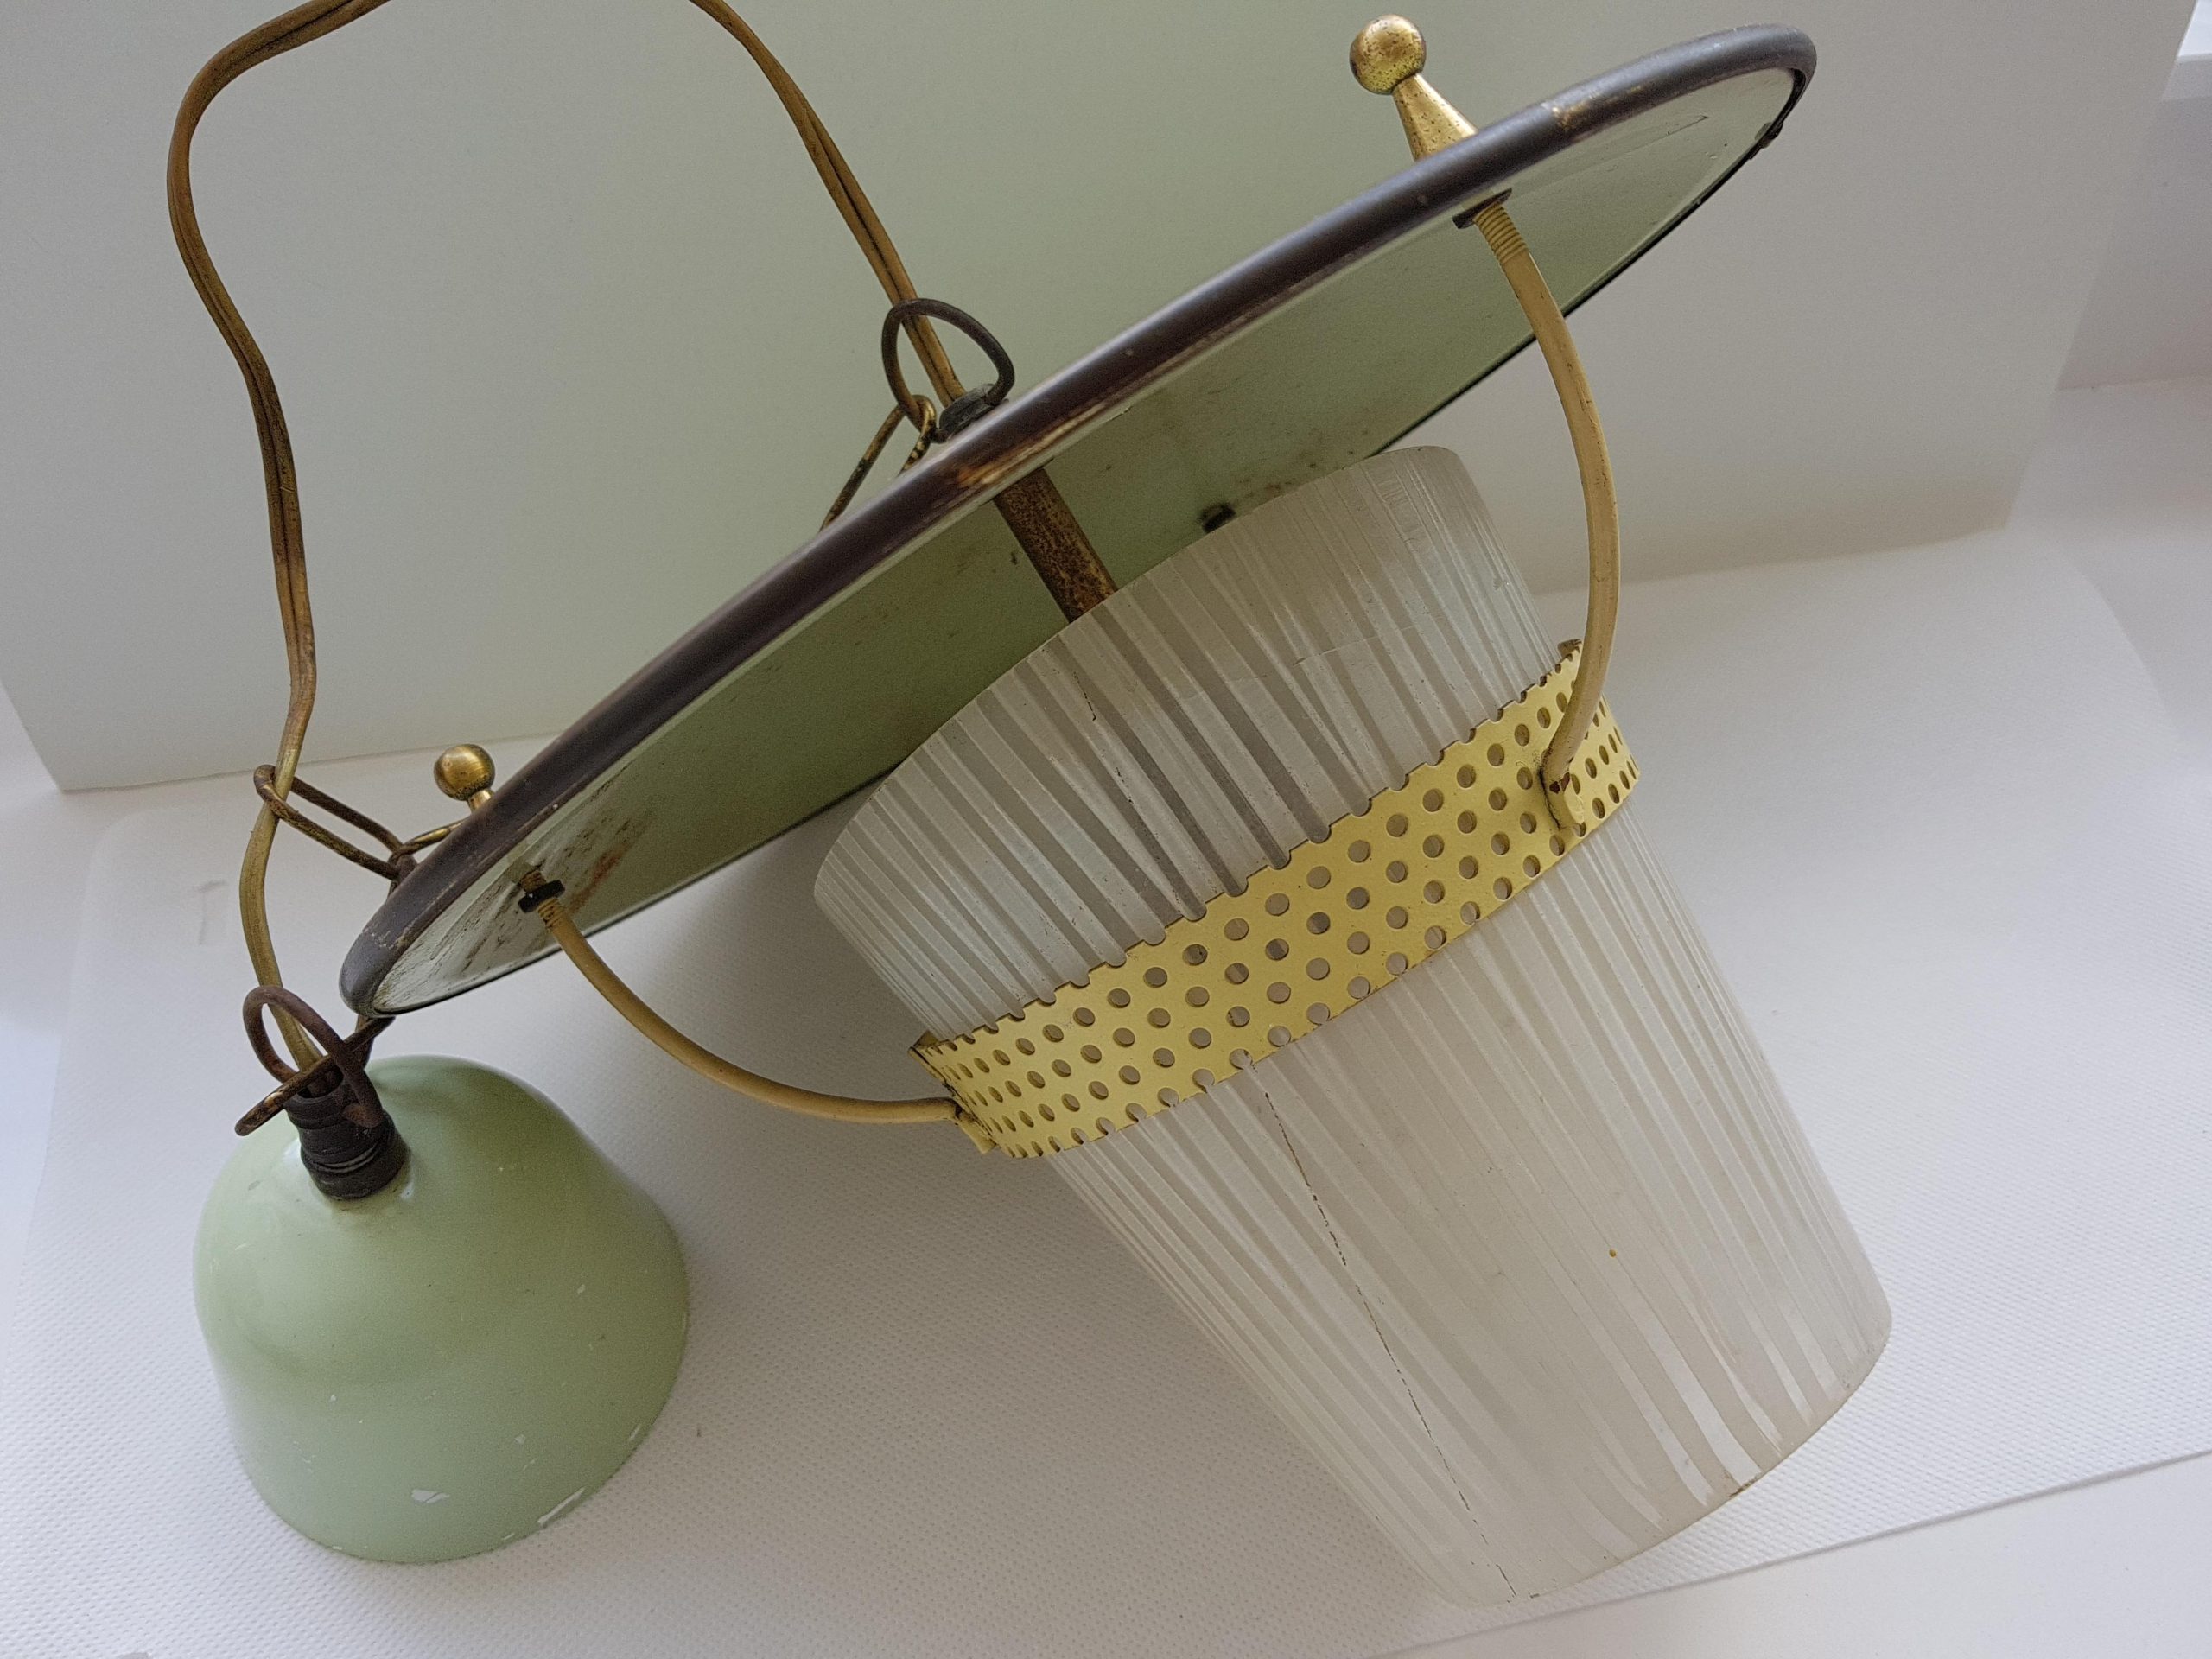 Philips?? hanglamp . Groen met gele rand met glazen kapje. 🌺 Vintage Webshop